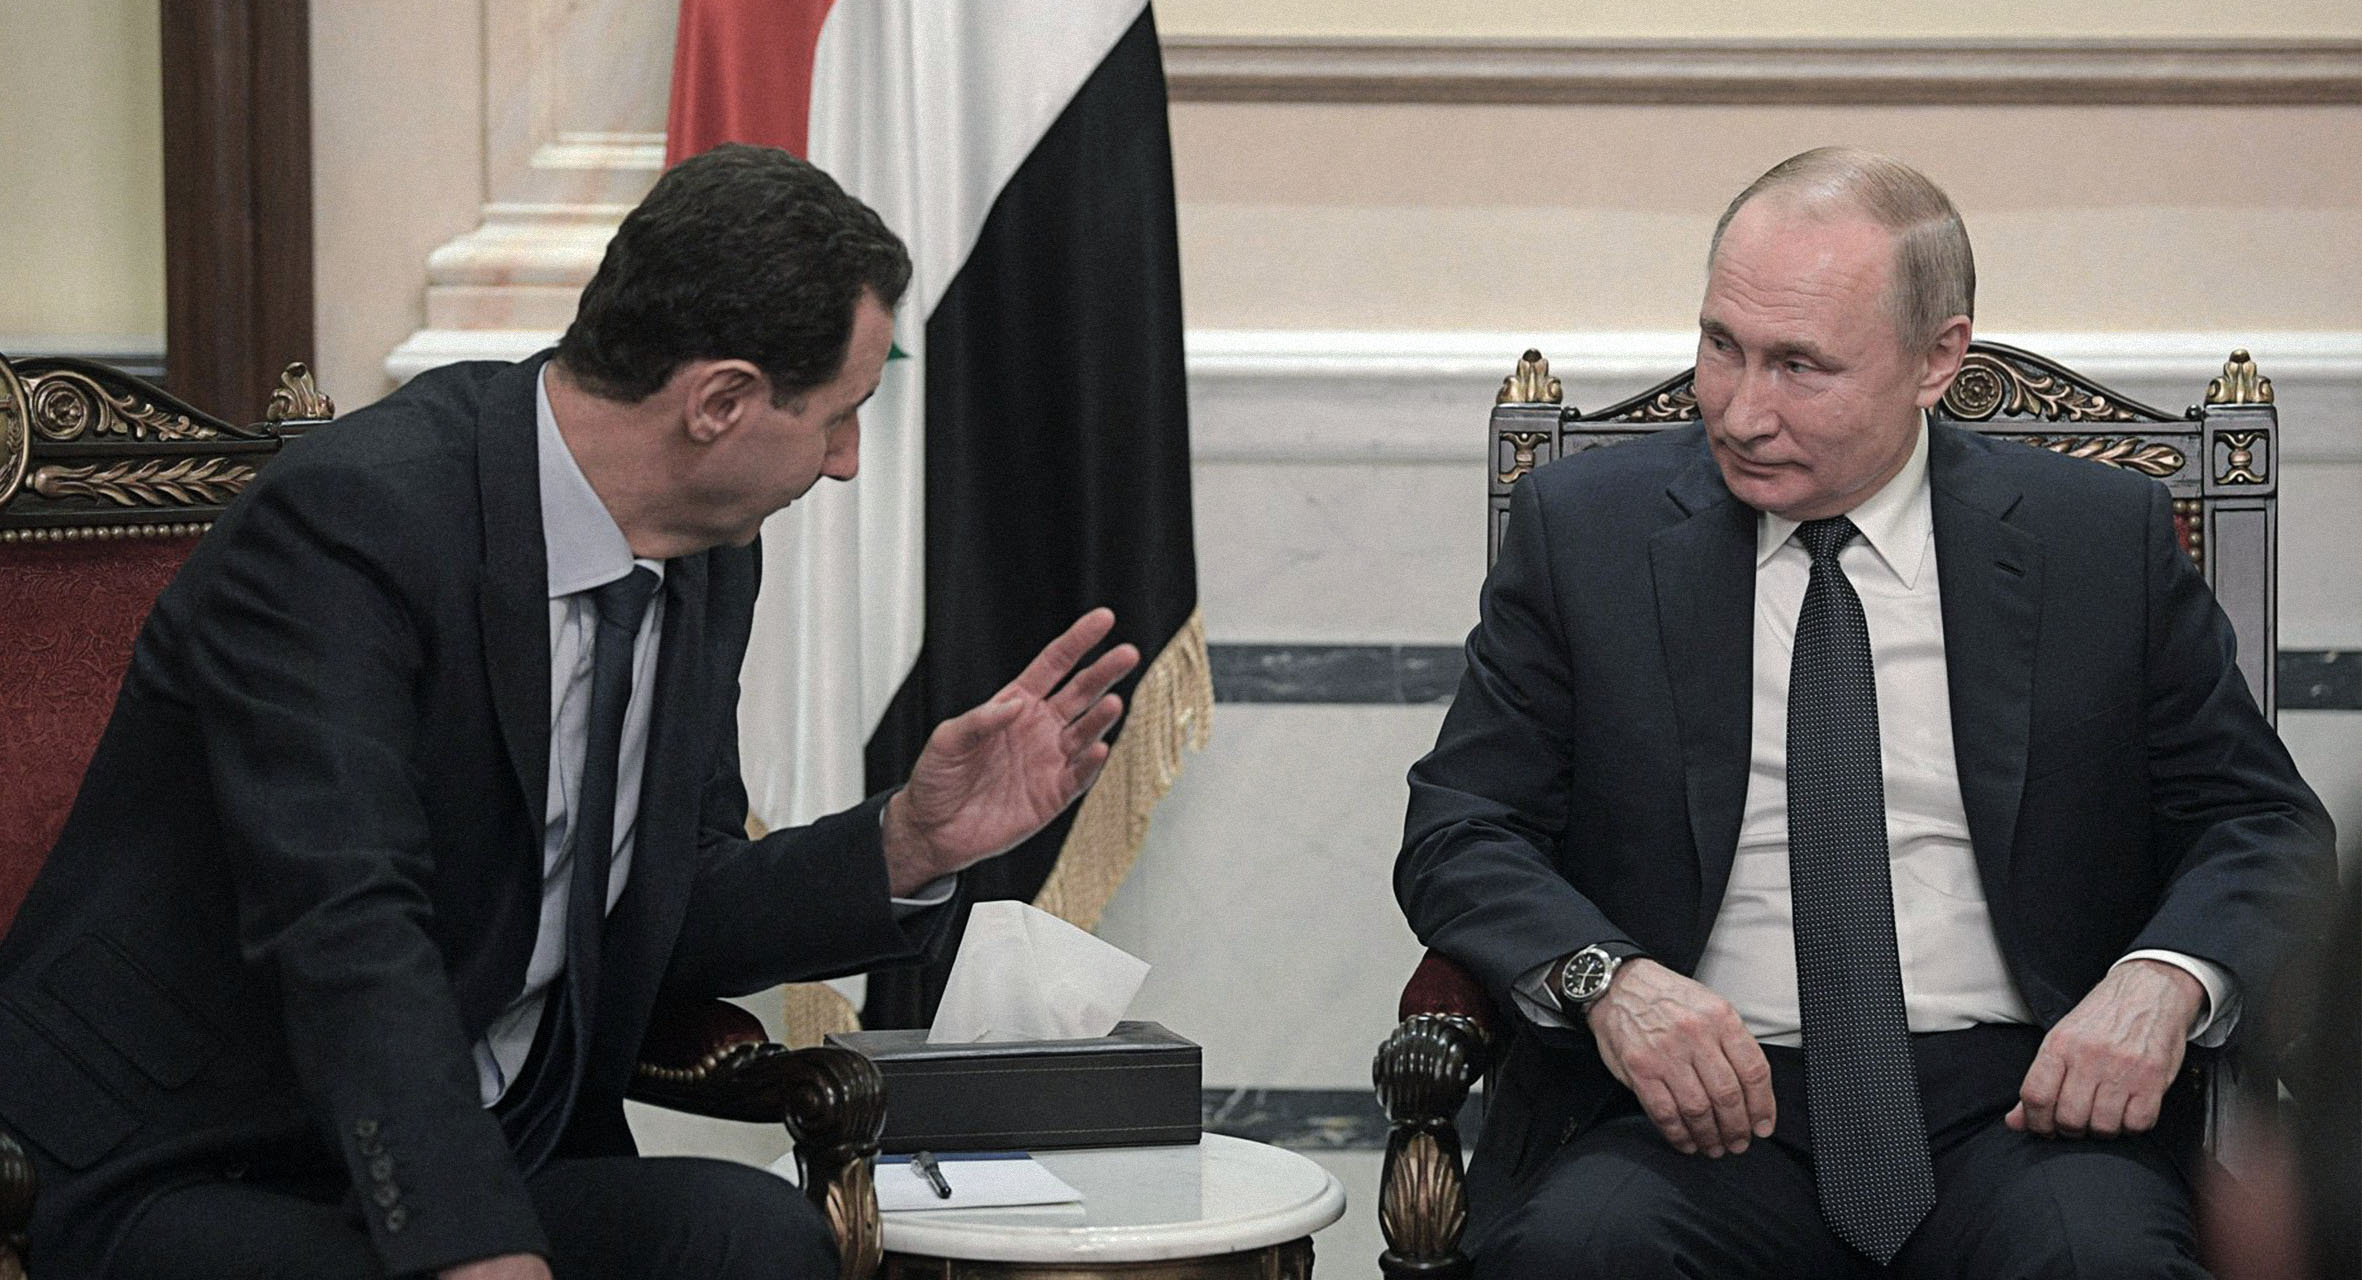 صورة الأسد يؤكد استعداده لرد جميل بوتن وقصف مستشفيات أي مدينة روسية تندلع فيها الاحتجاجات